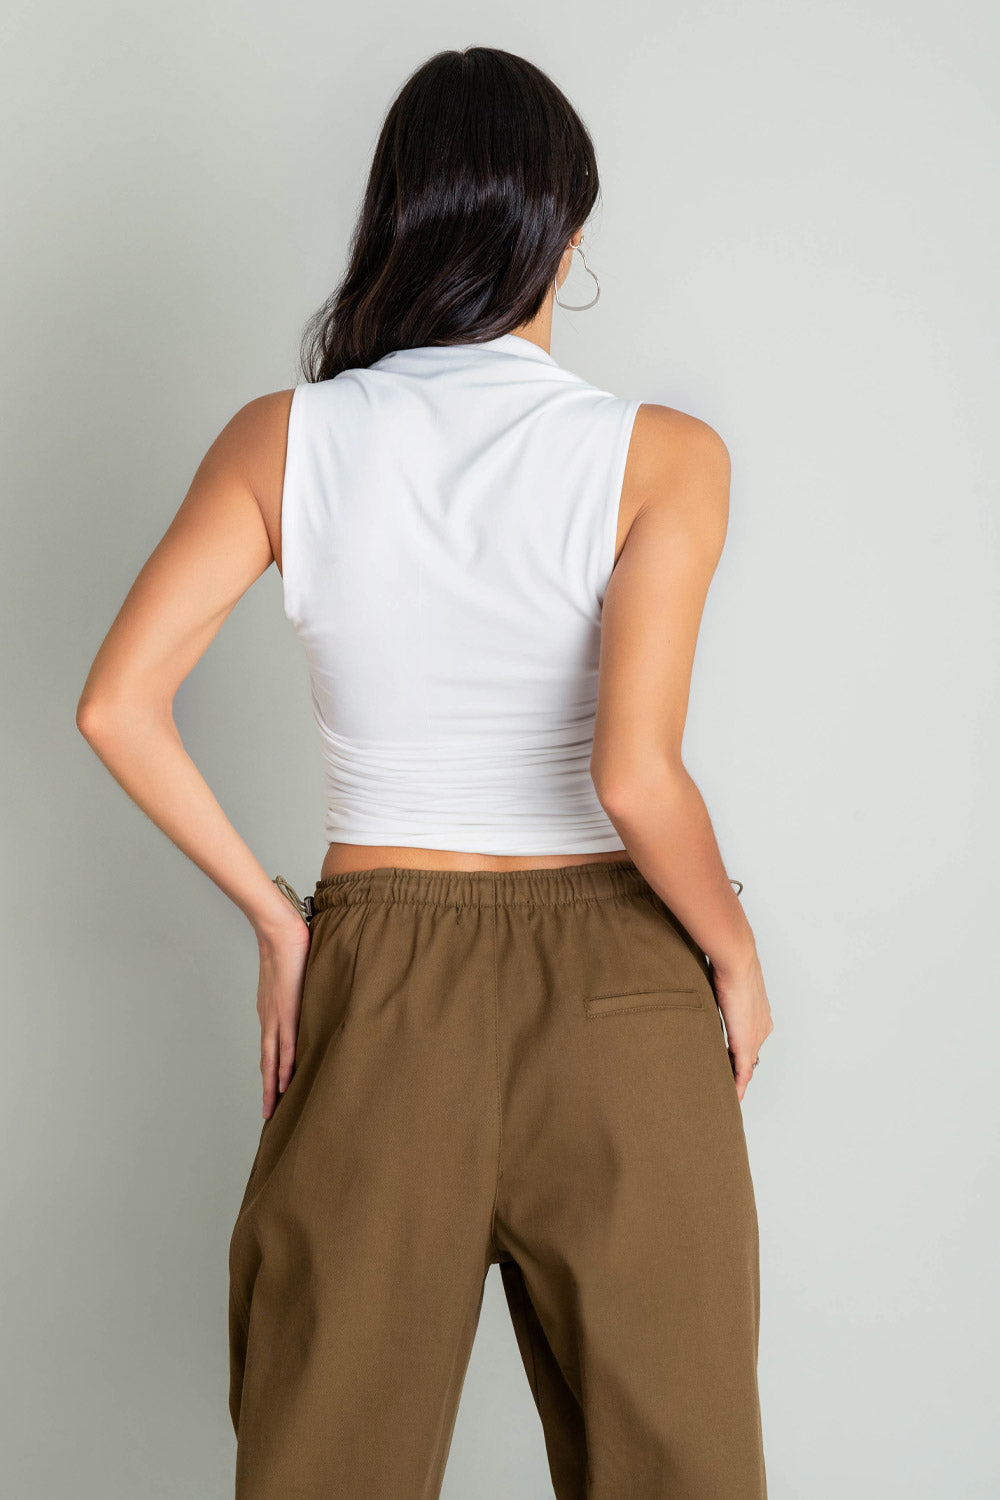 Top corto de fit ajustado, plisado en costados, sin mangas y escote recto con plisados en hombros.